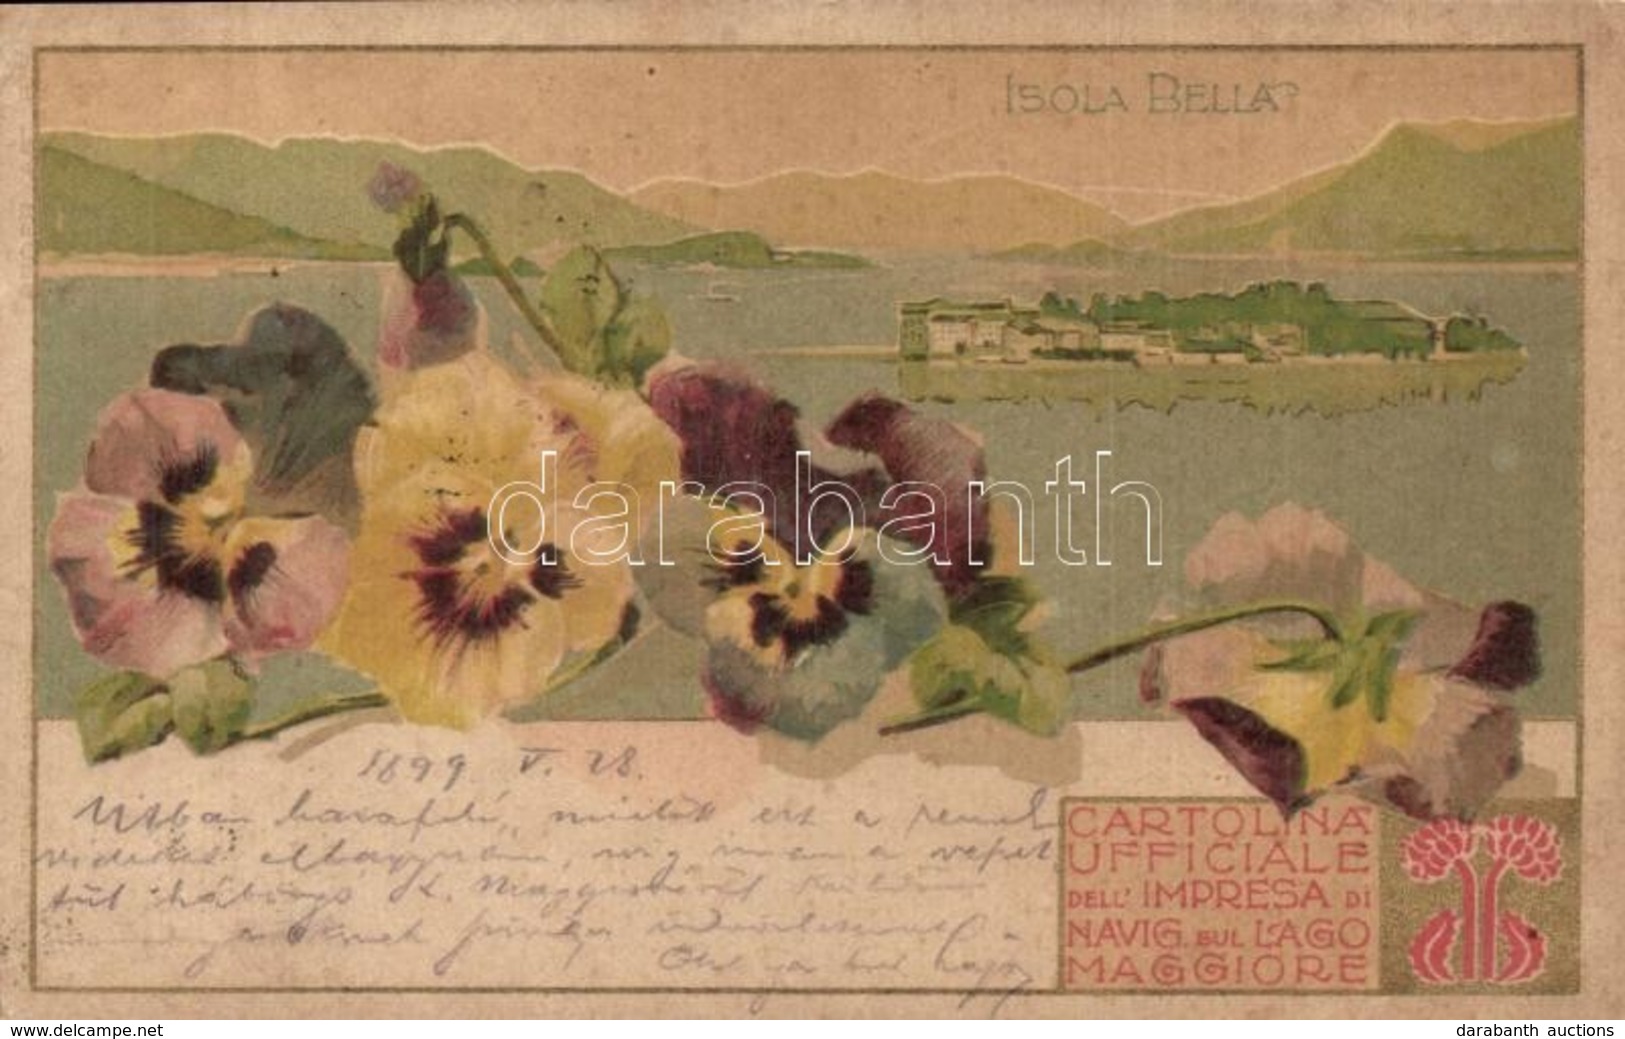 * T2/T3 1899 Isola Bella. Cartolina Ufficiale Dell'Impresa Di Navig. Sel Lago Maggiore. Art Nouveau, Floral, Litho  (Rb) - Non Classés